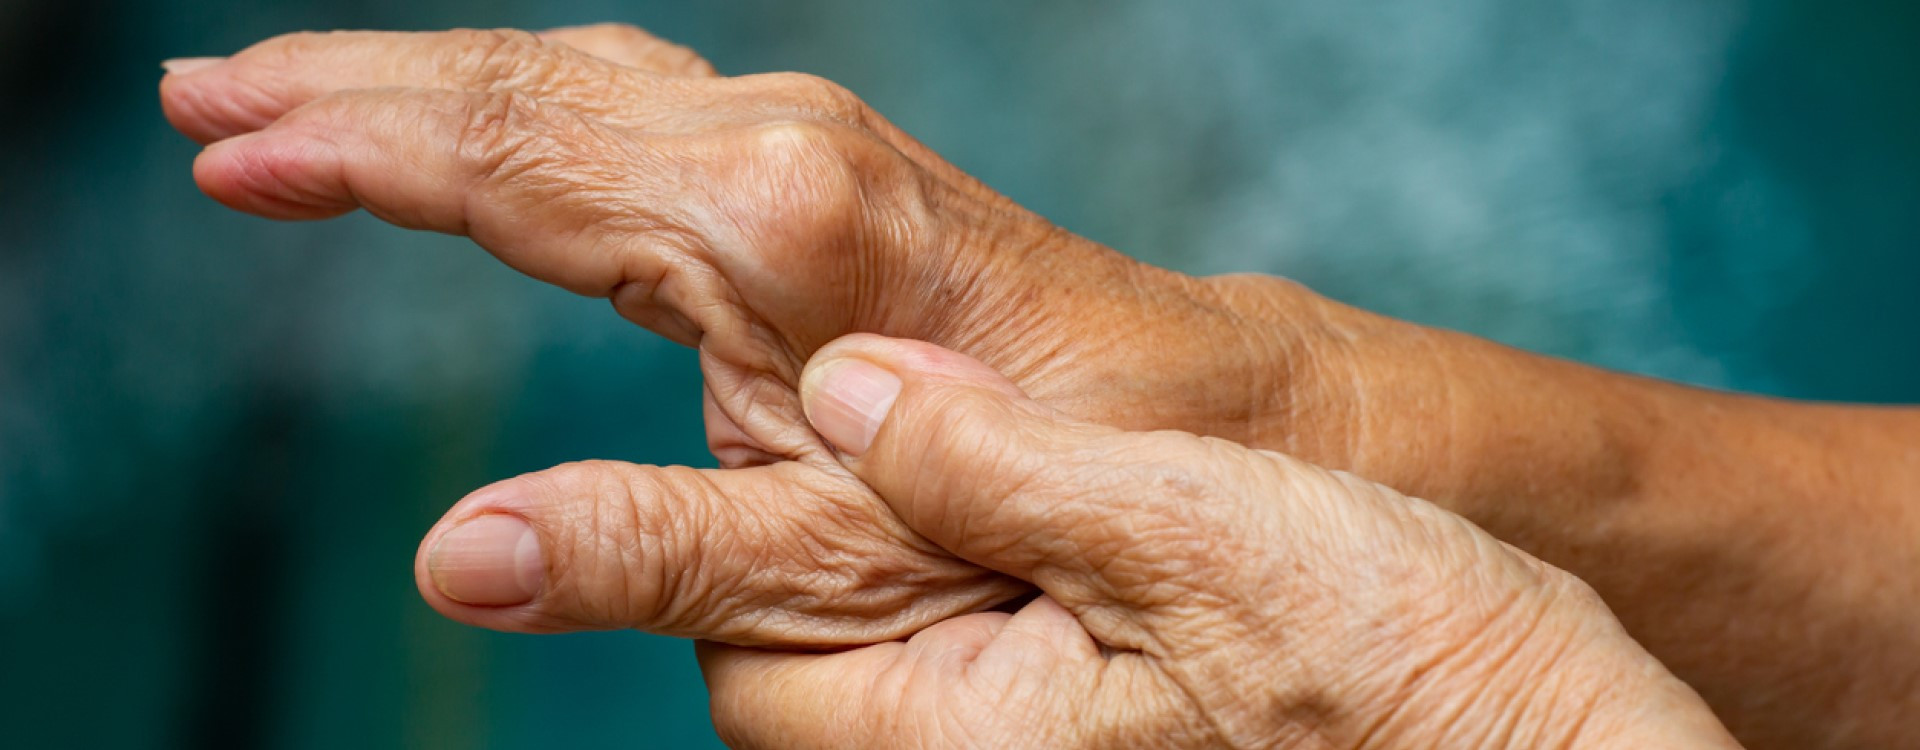 Comment soulager l'arthrose des doigts ? - Bluetens